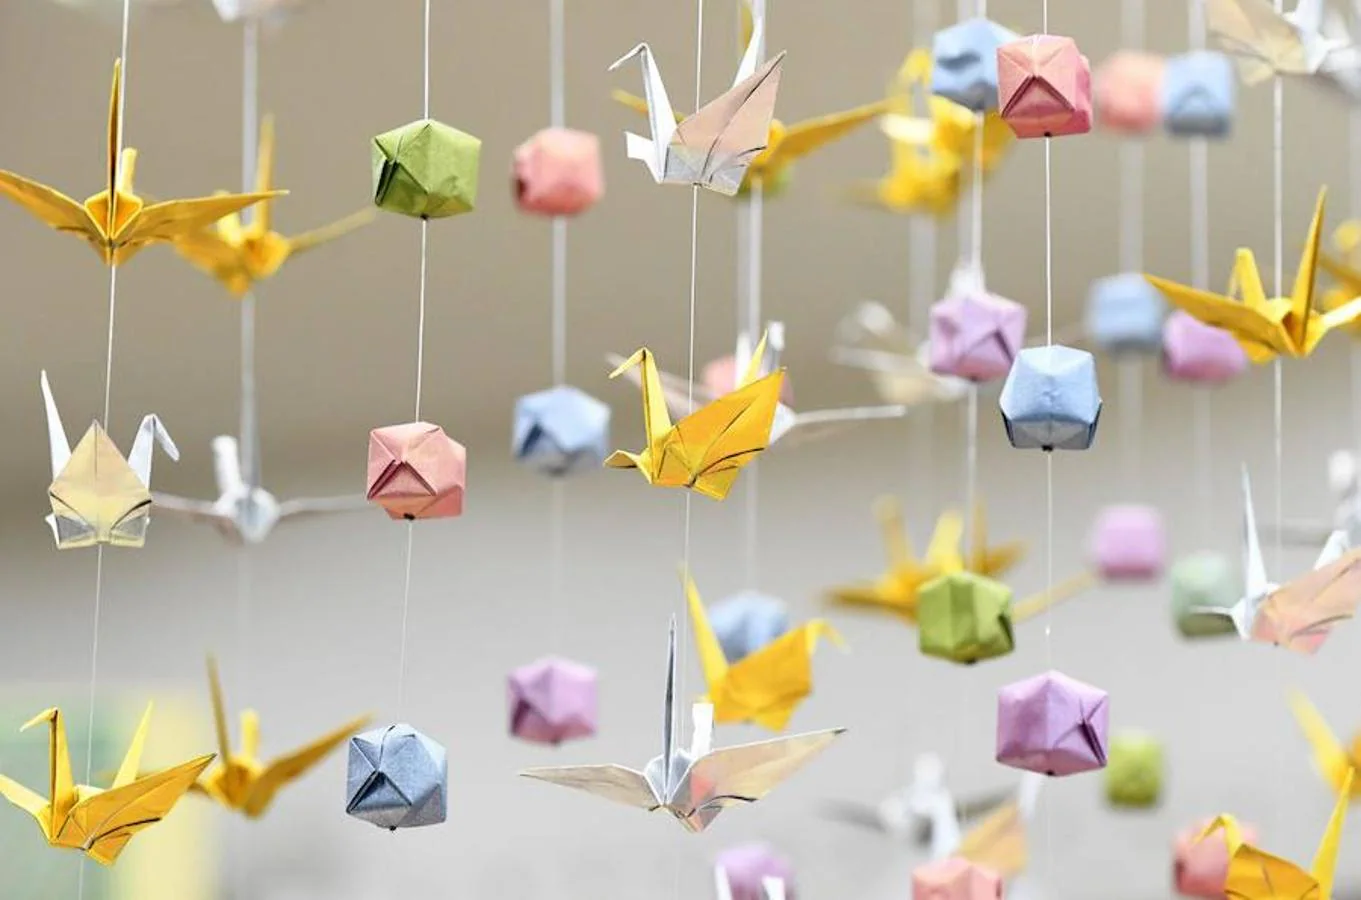 La papiroflexia o origami es el arte Japonés por excelencia, y la galería Origami Kaikan se centra exclusivamente a él. Este centro de exposiciones y taller de la papiroflexia es de entrada gratuita y dispone de una galería, tienda y clases de origami. Si alguien quiere asistir a sus cursos deberá pagar por cada clase.